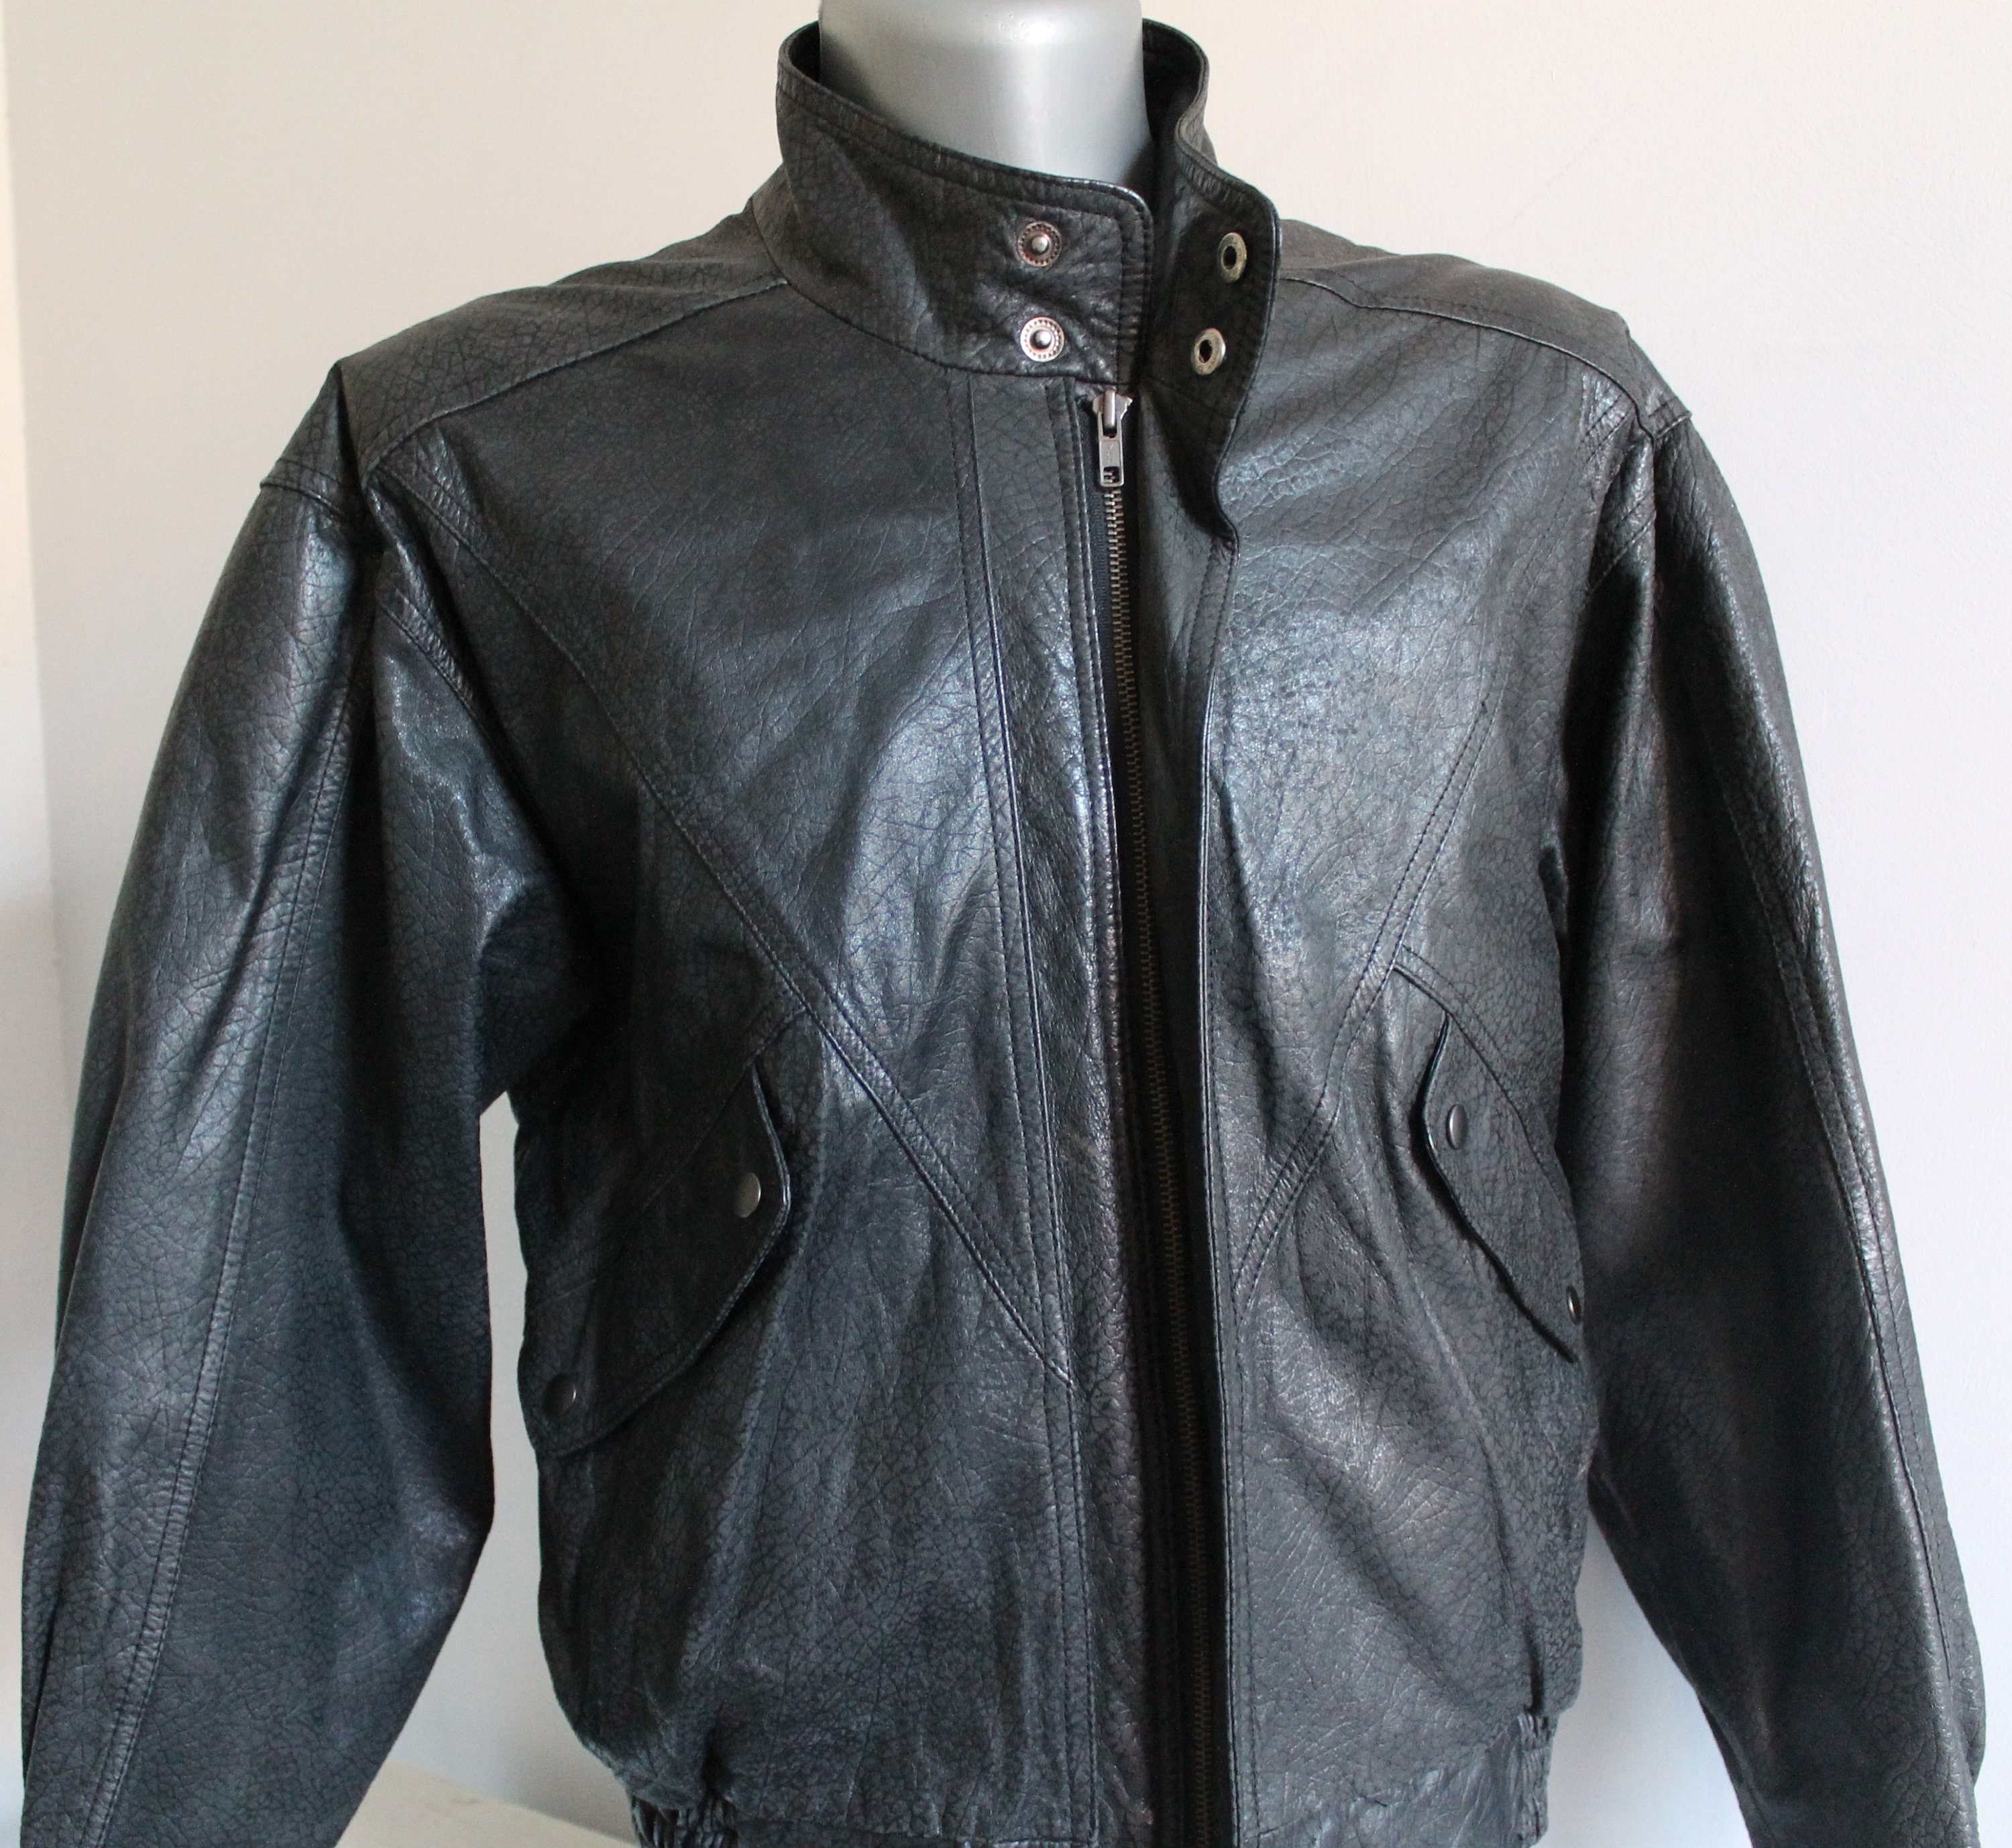 Motorcycle Leather Bomber Jacket Black Leather - Etsy Israel